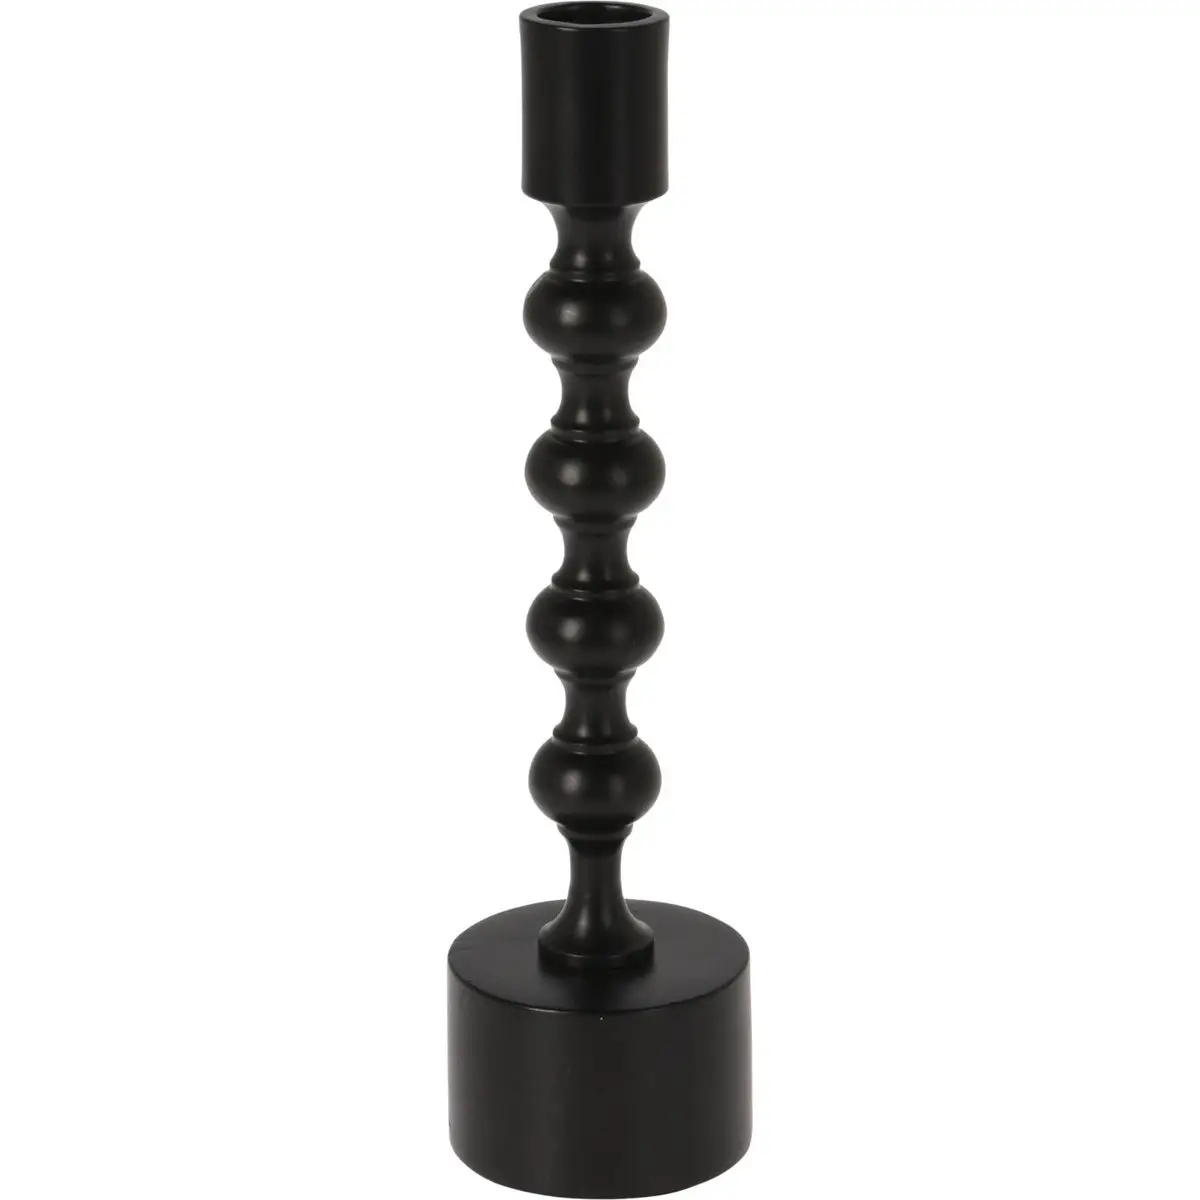 Kerzenst盲nder, schwarz, Aluminium, 23 cm